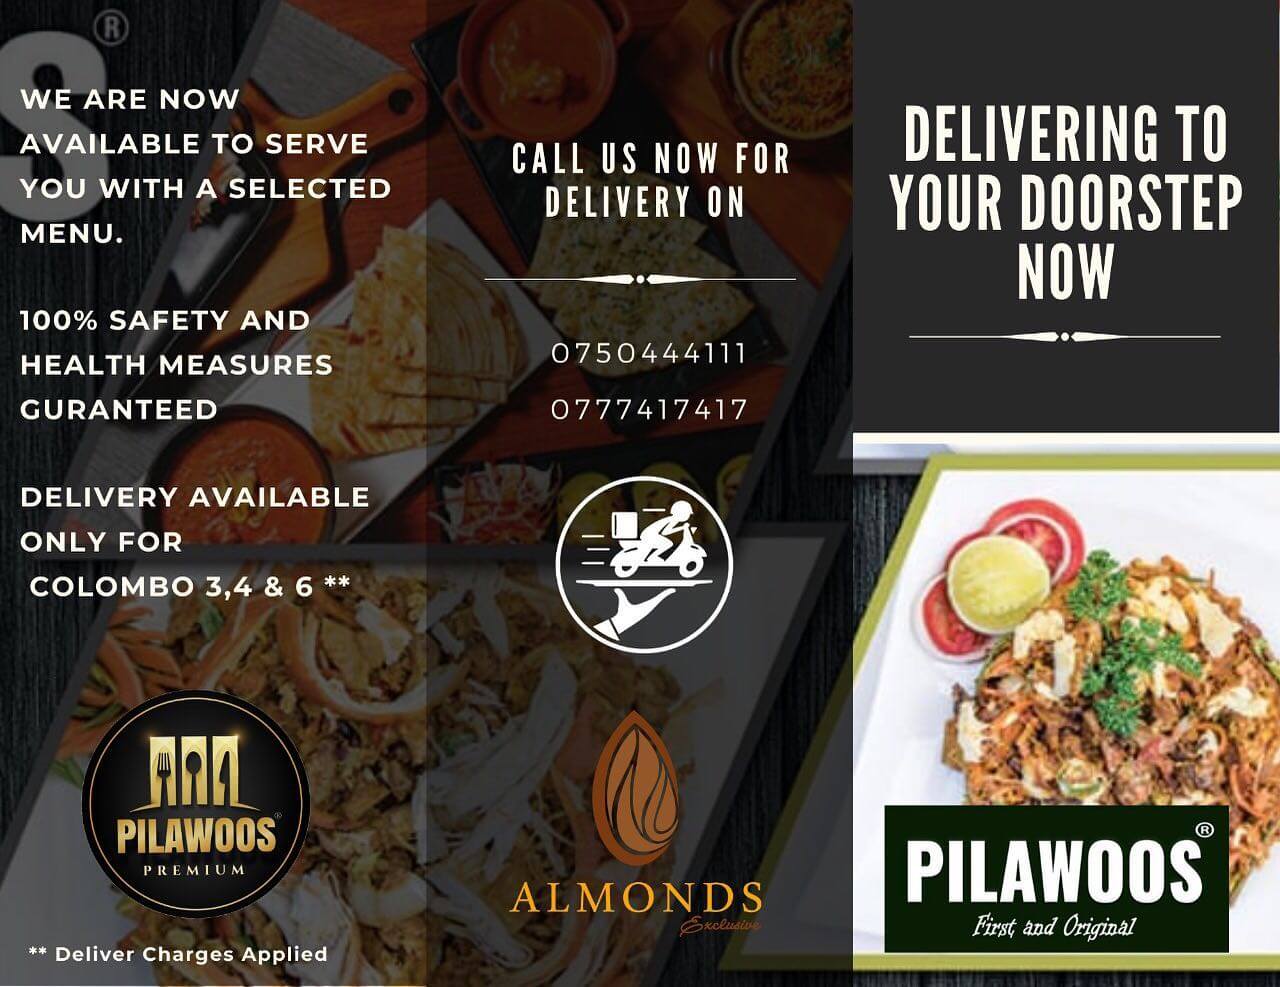 Pilawoos Premium